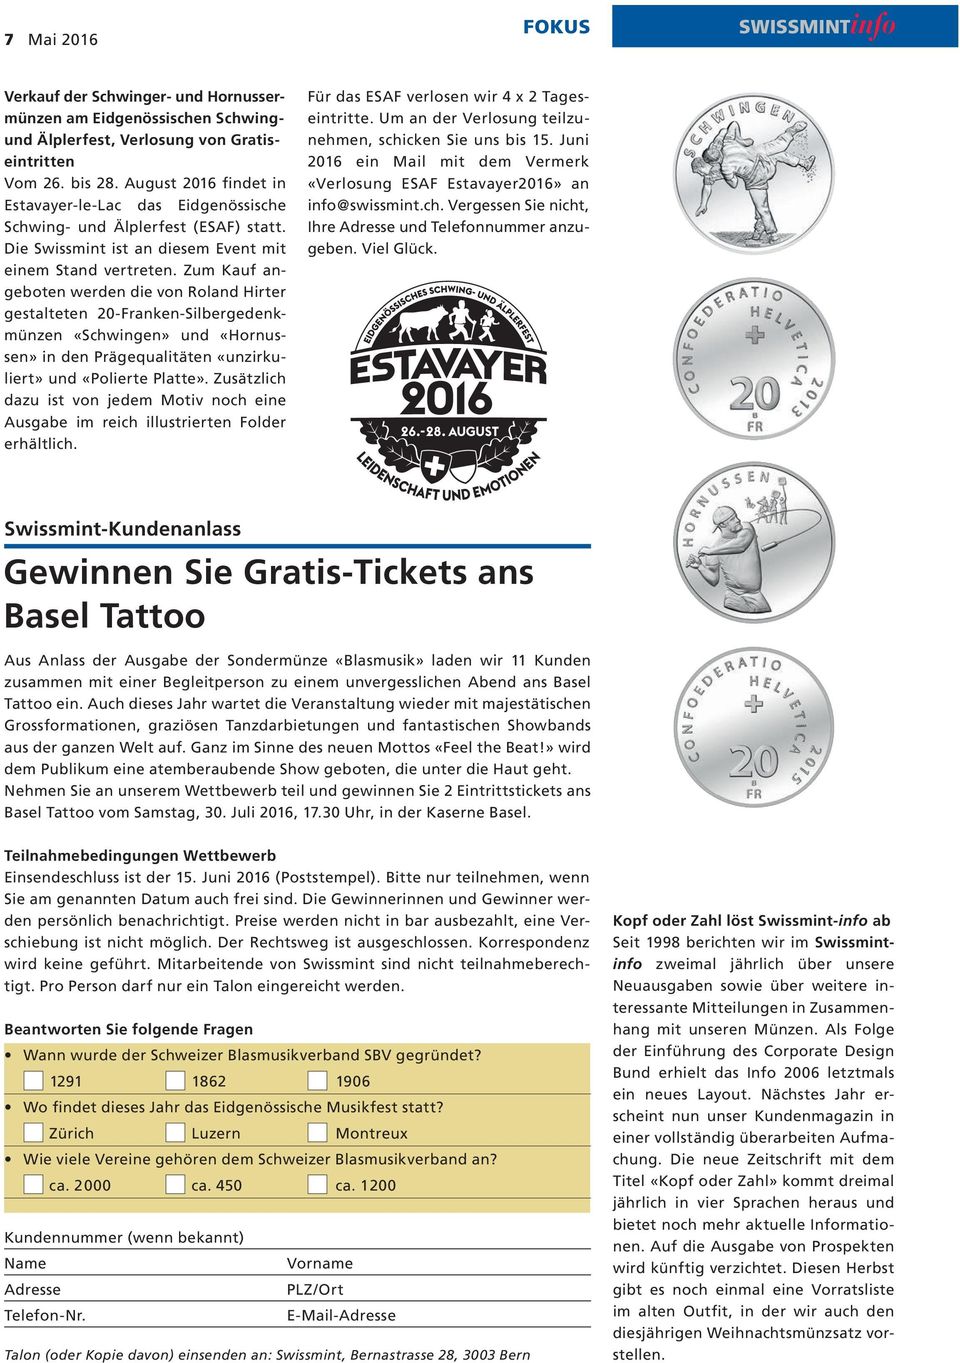 Zum Kauf angeboten werden die von Roland Hirter gestalteten 20-Franken-Silbergedenkmünzen «Schwingen» und «Hornussen» in den Prägequalitäten «unzirkuliert» und «Polierte Platte».